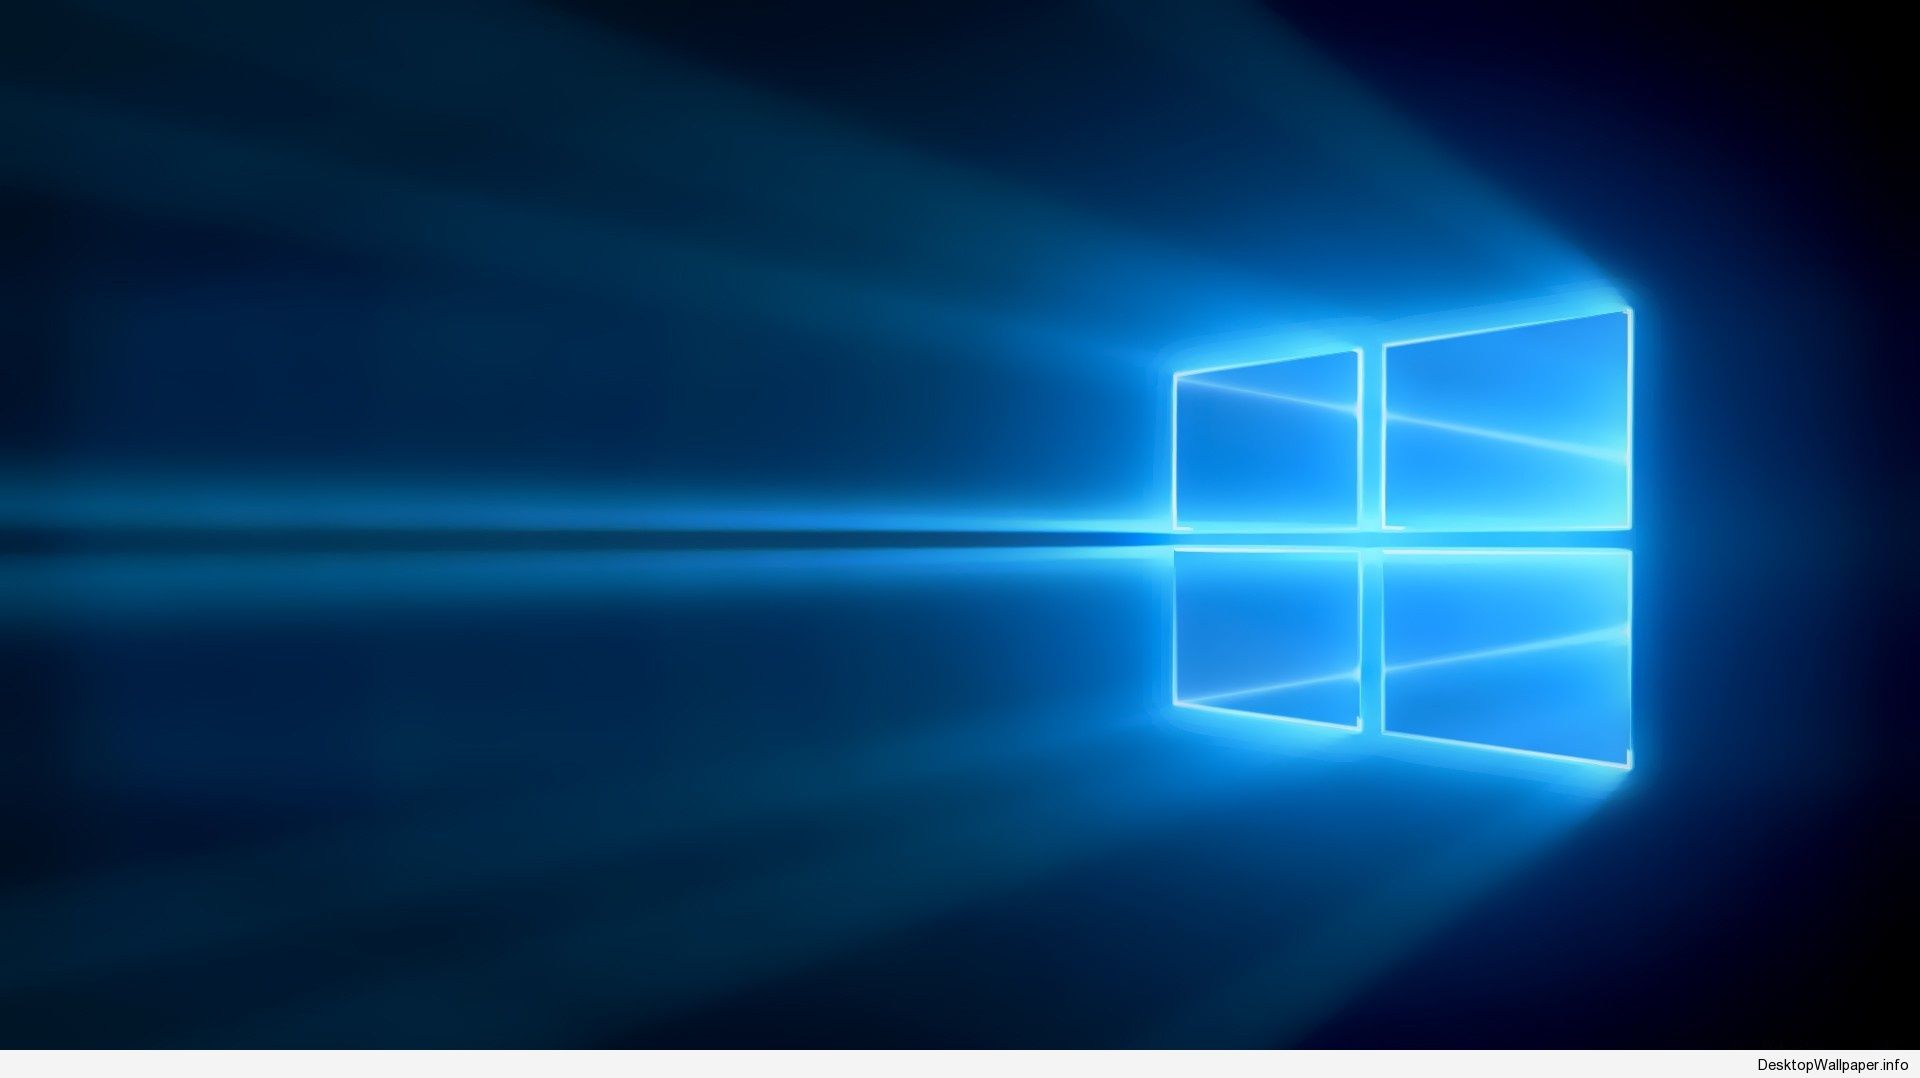 Khám phá hình nền Windows 10 đẹp đến ngỡ ngàng và làm tươi mới cho màn hình của bạn. Từ cảnh thiên nhiên đến những đường cong hiện đại, bạn sẽ không muốn bỏ lỡ bất kỳ ánh nhìn nào. Hãy xem ngay!